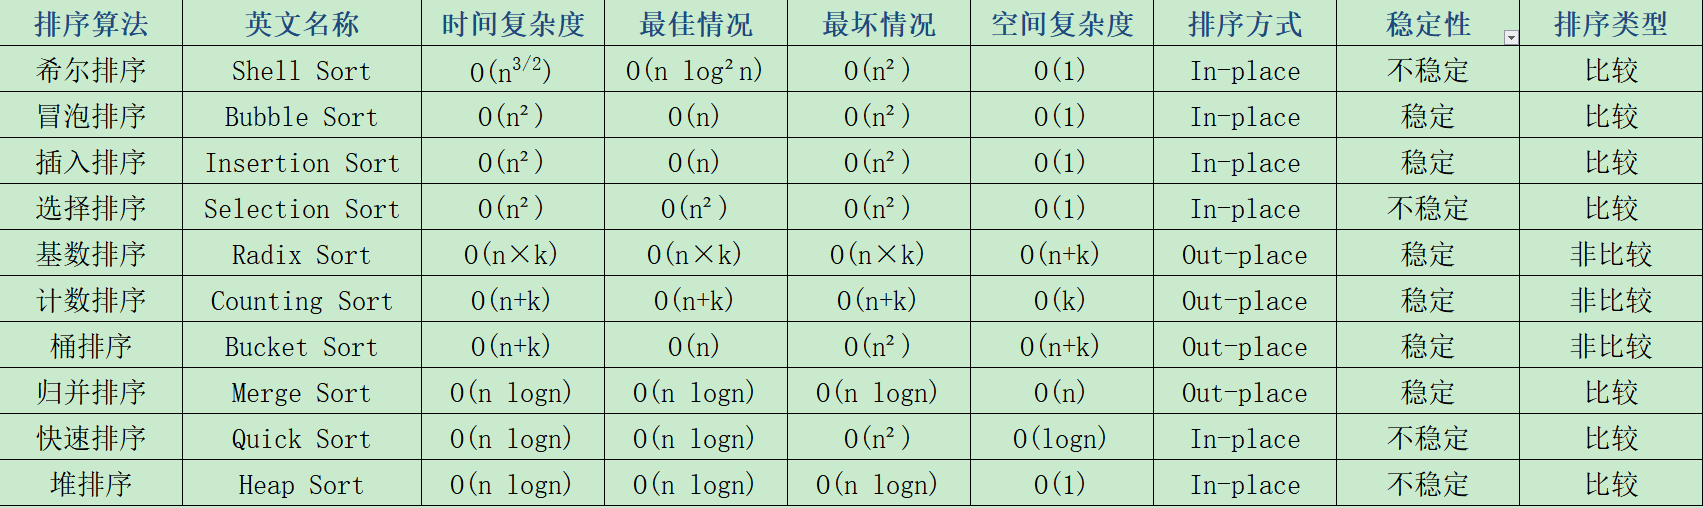 十大常用经典排序算法总结图_十大算法「建议收藏」